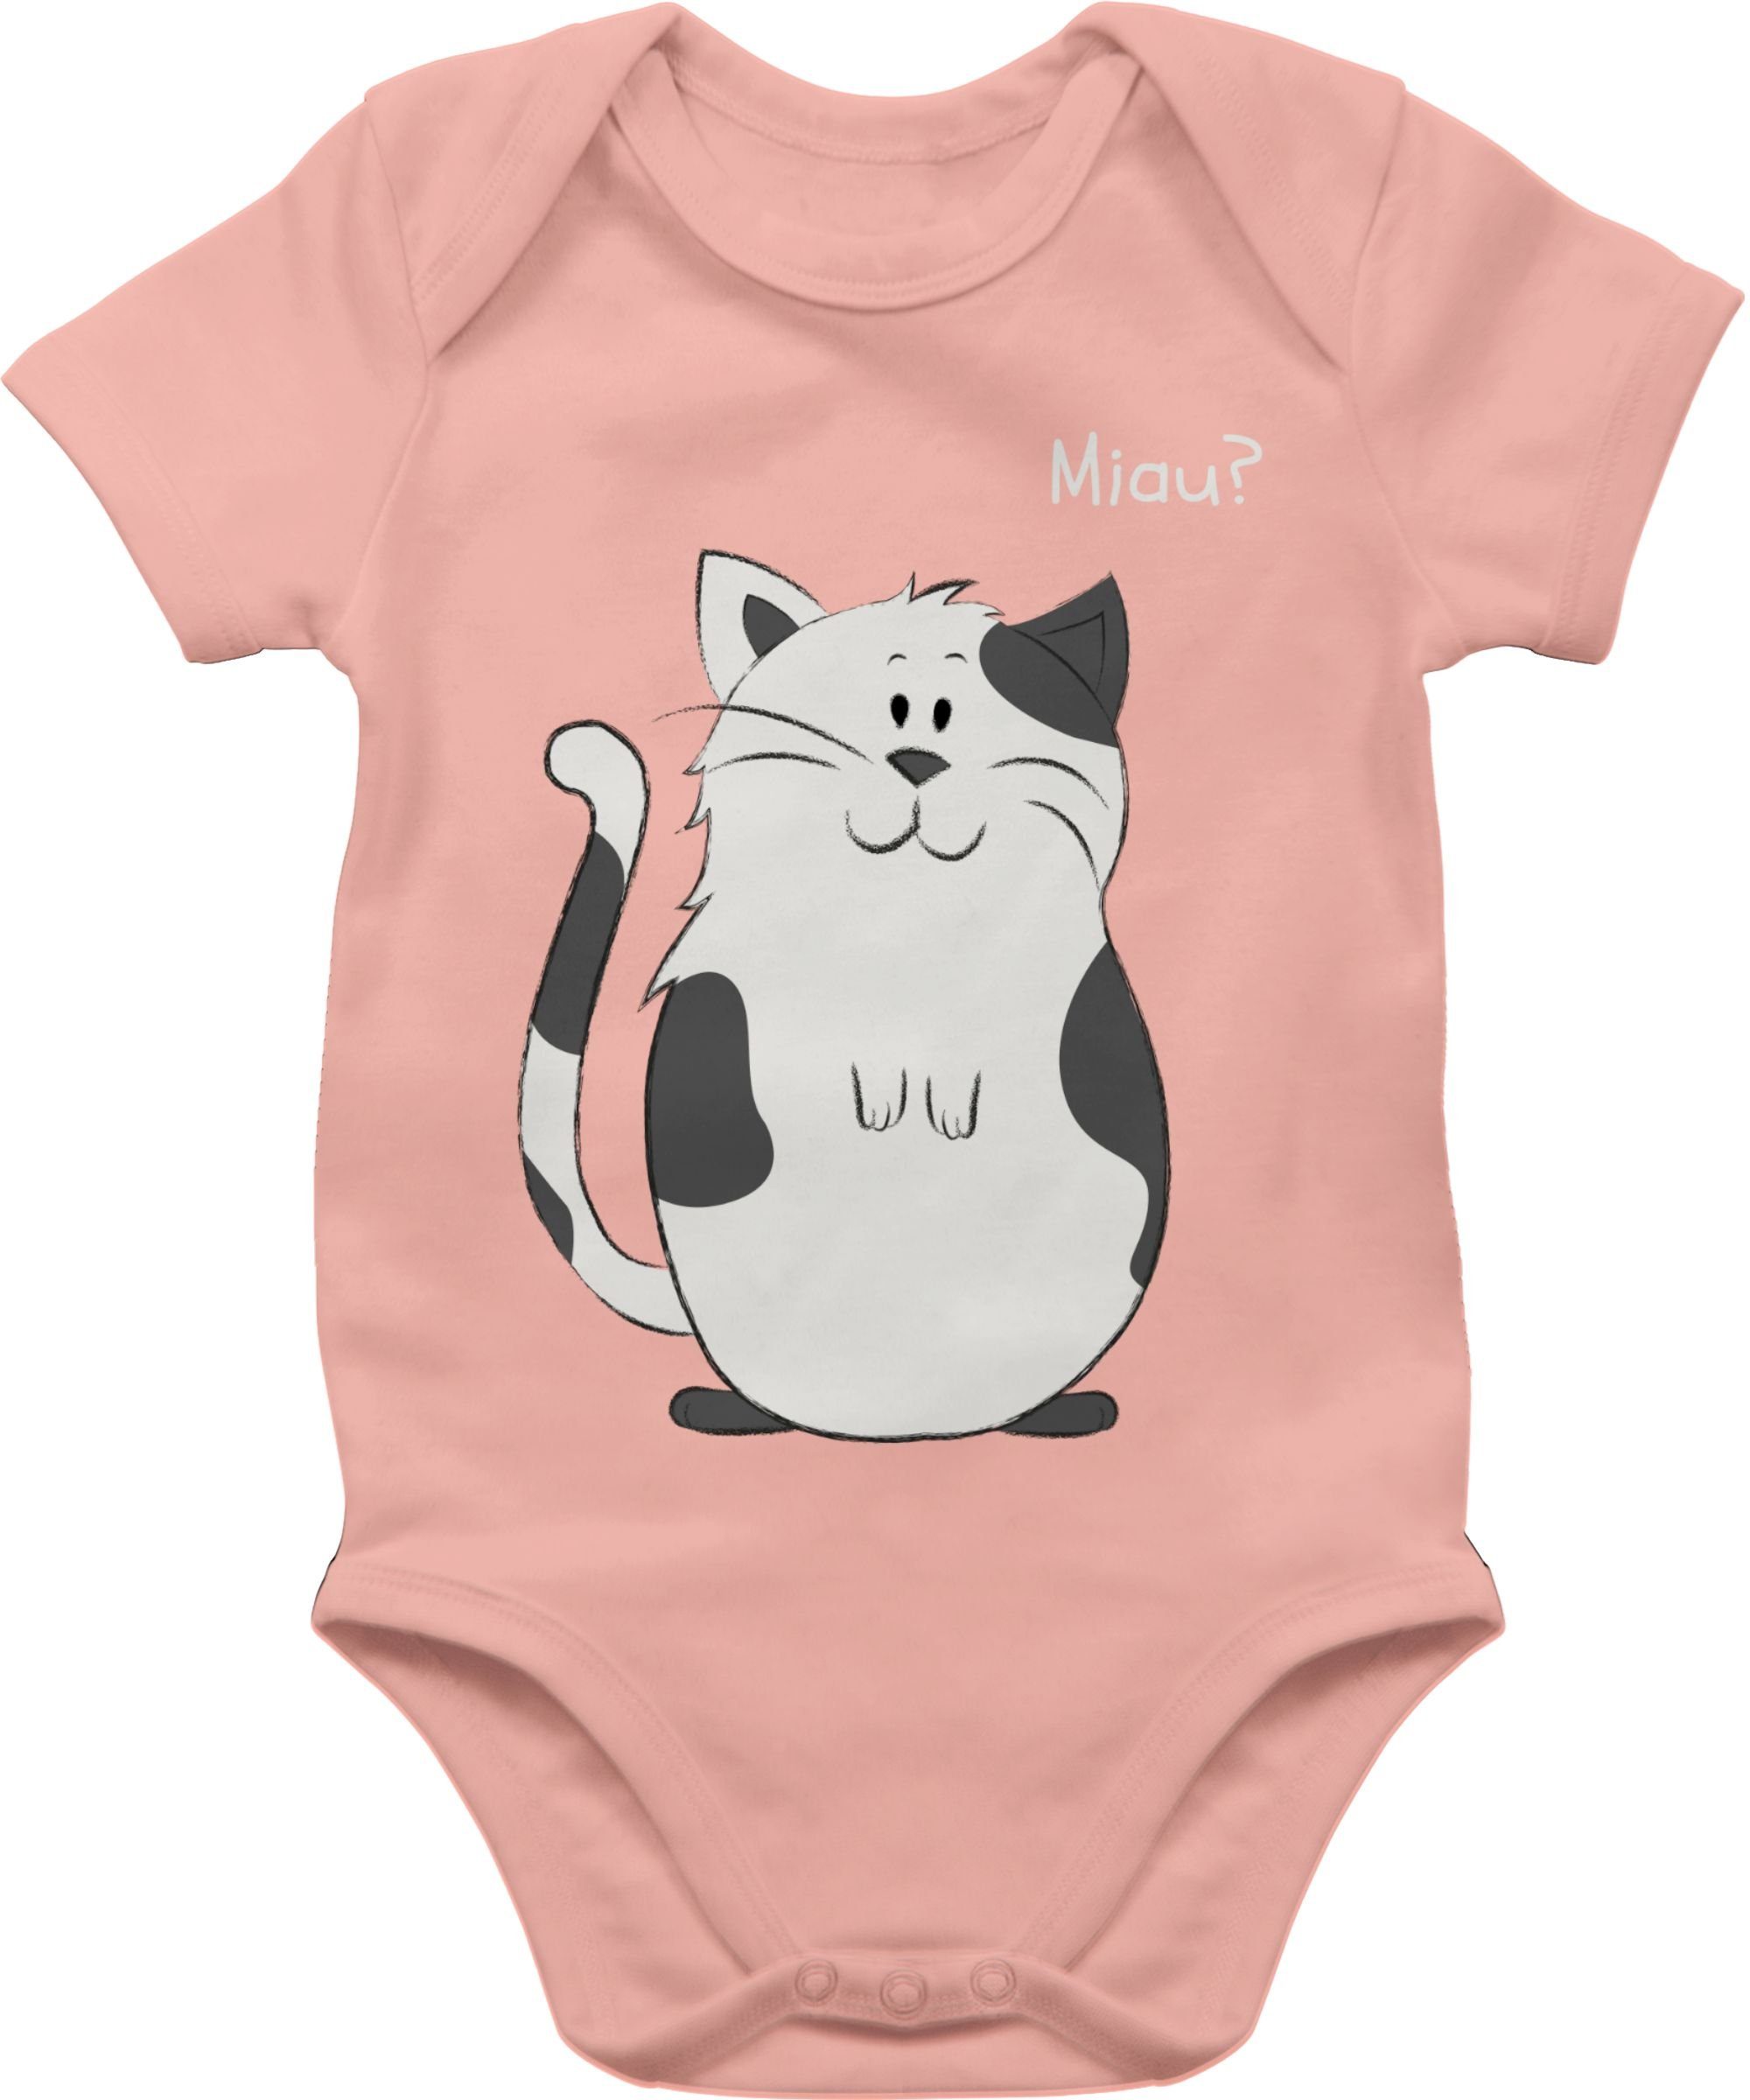 Tiermotiv Animal Print lustige Babyrosa Baby Shirtbody Shirtracer 3 Katze